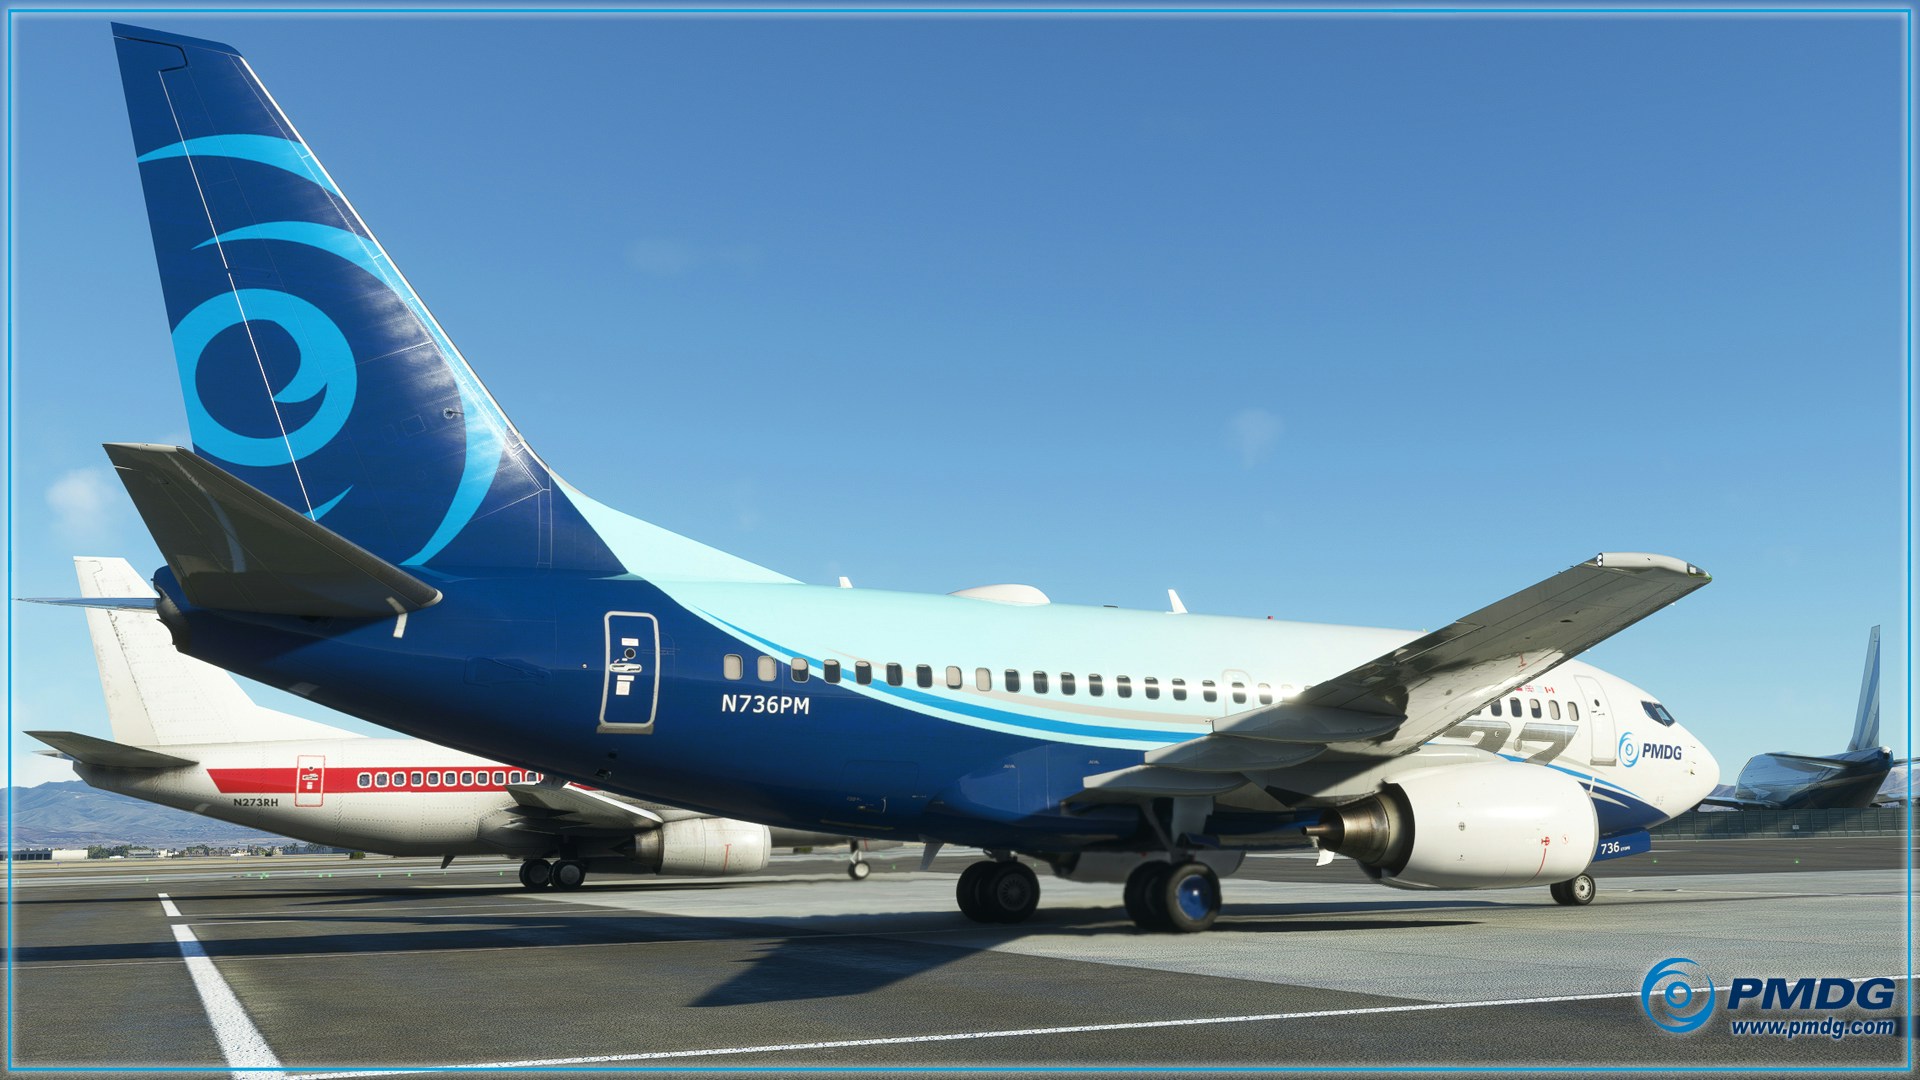 PMDG Previews 737-600 for MSFS